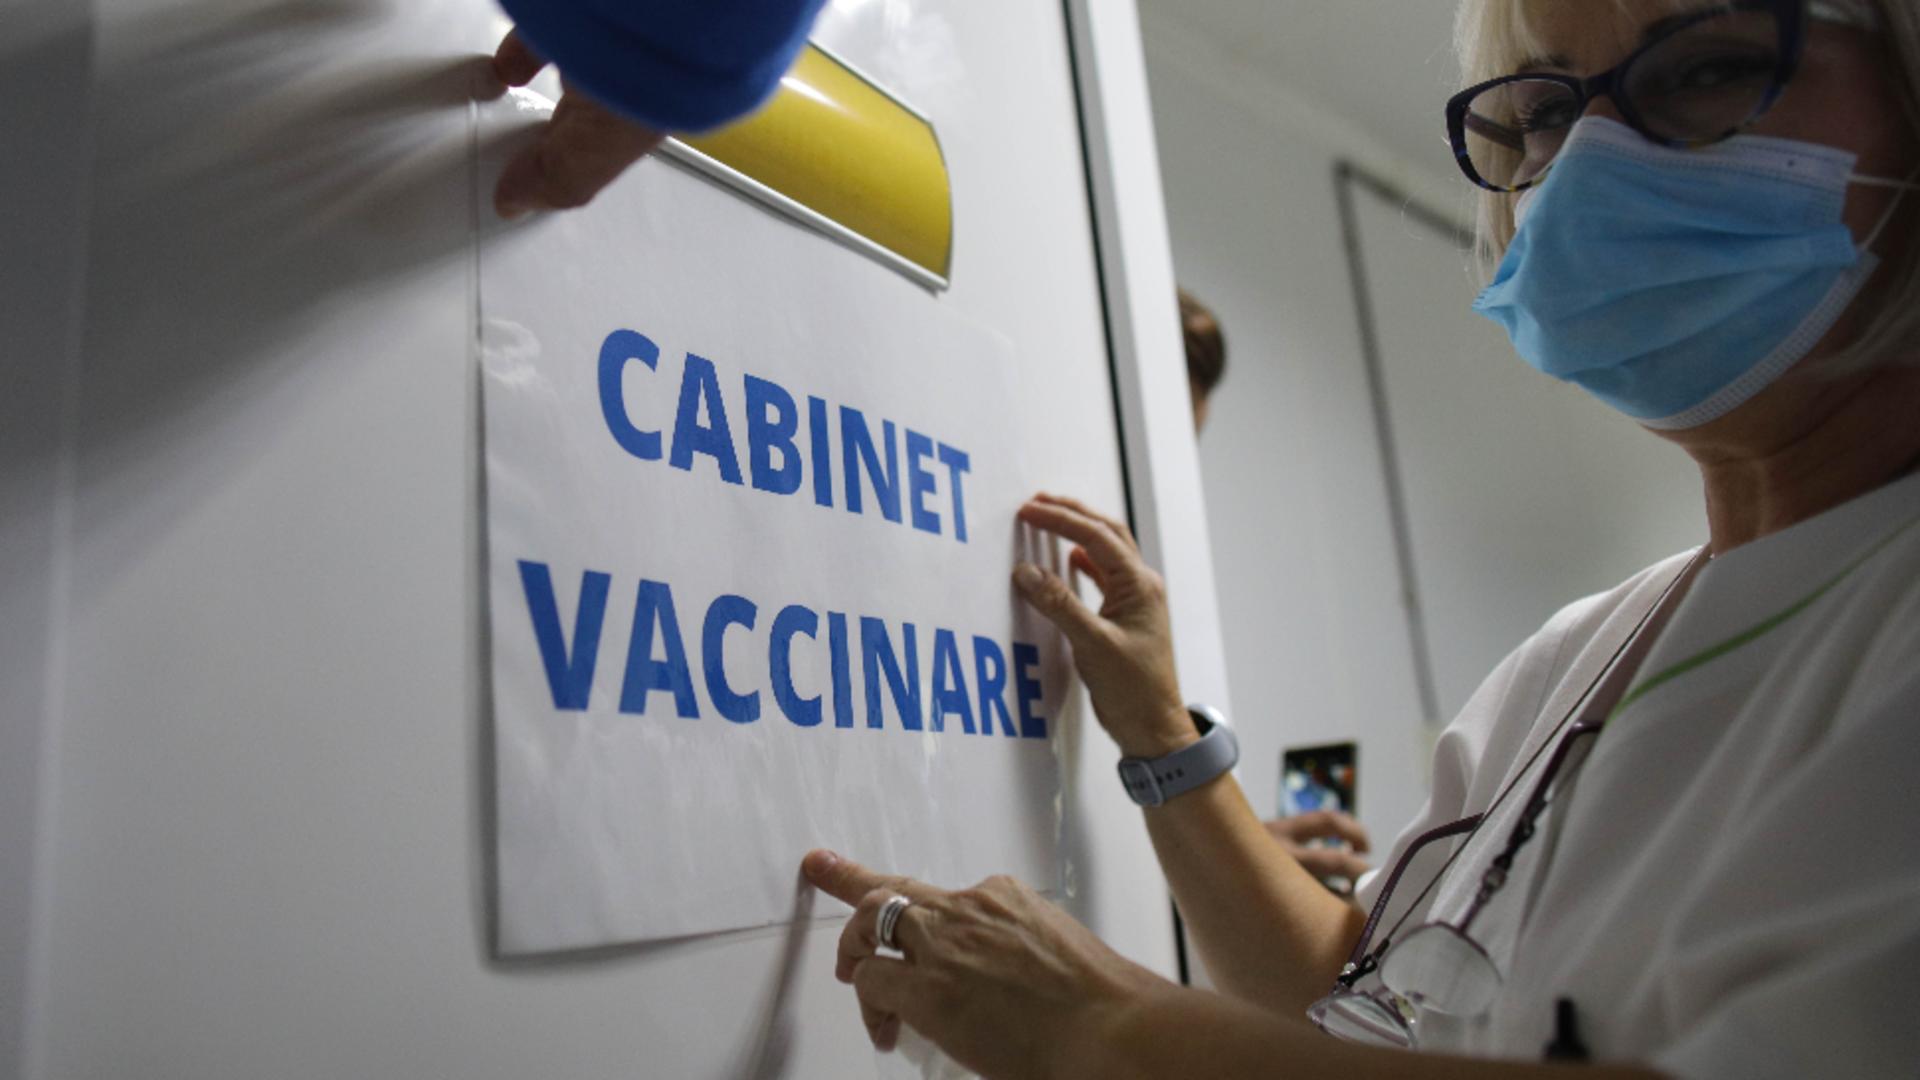 Cabinet vaccinare / Inquam Photos/ Octav Ganea